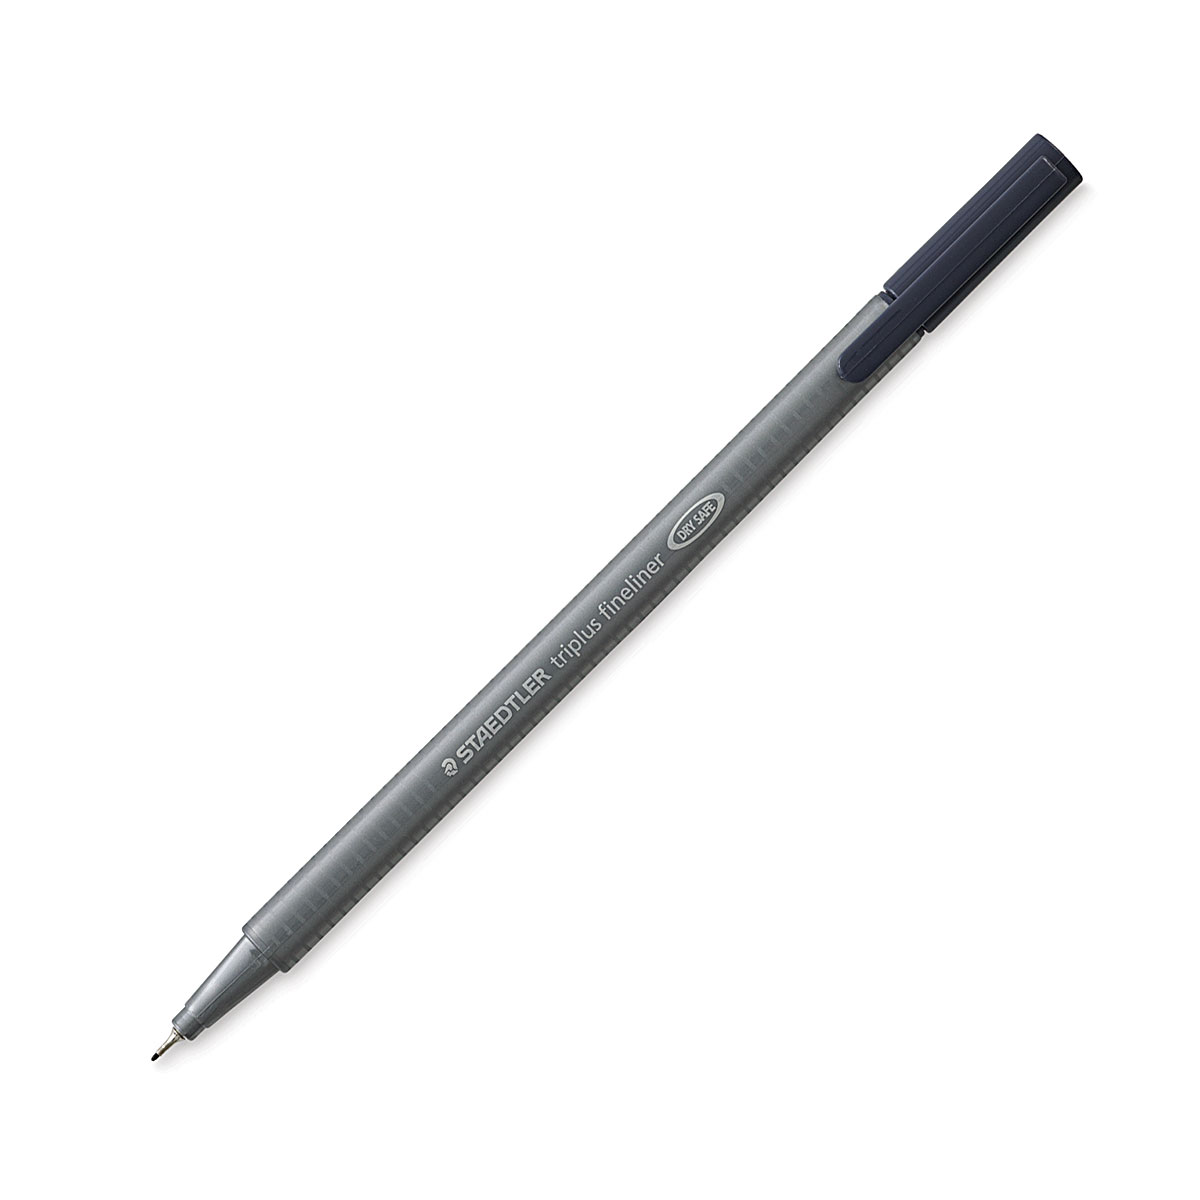 Staedtler TriPlus Fineliner Pen - Blue